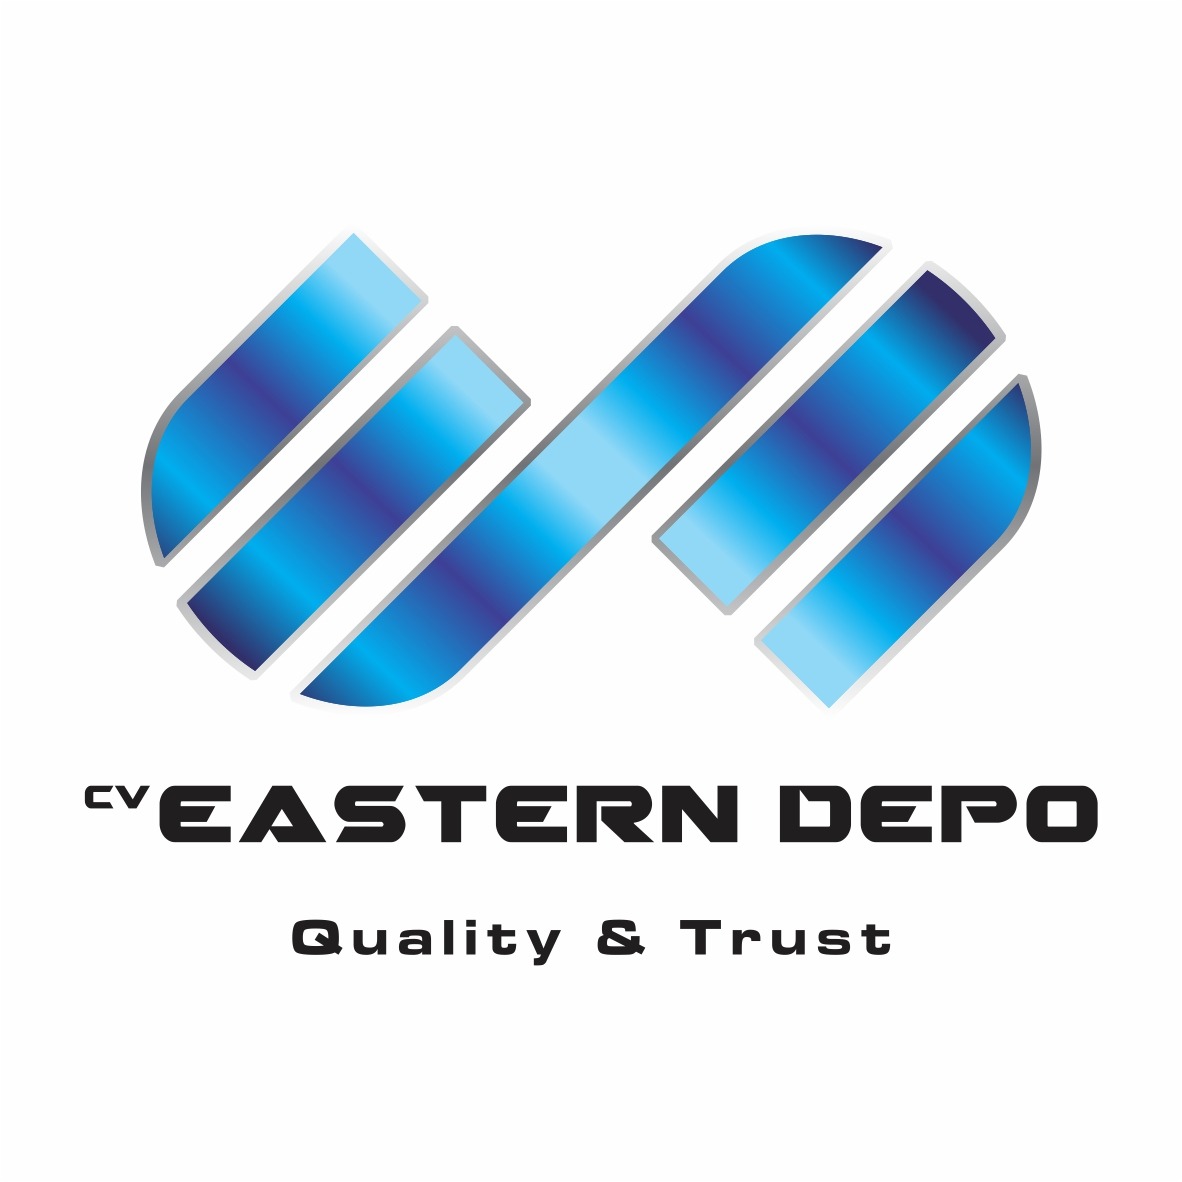 Eastern Depo CV